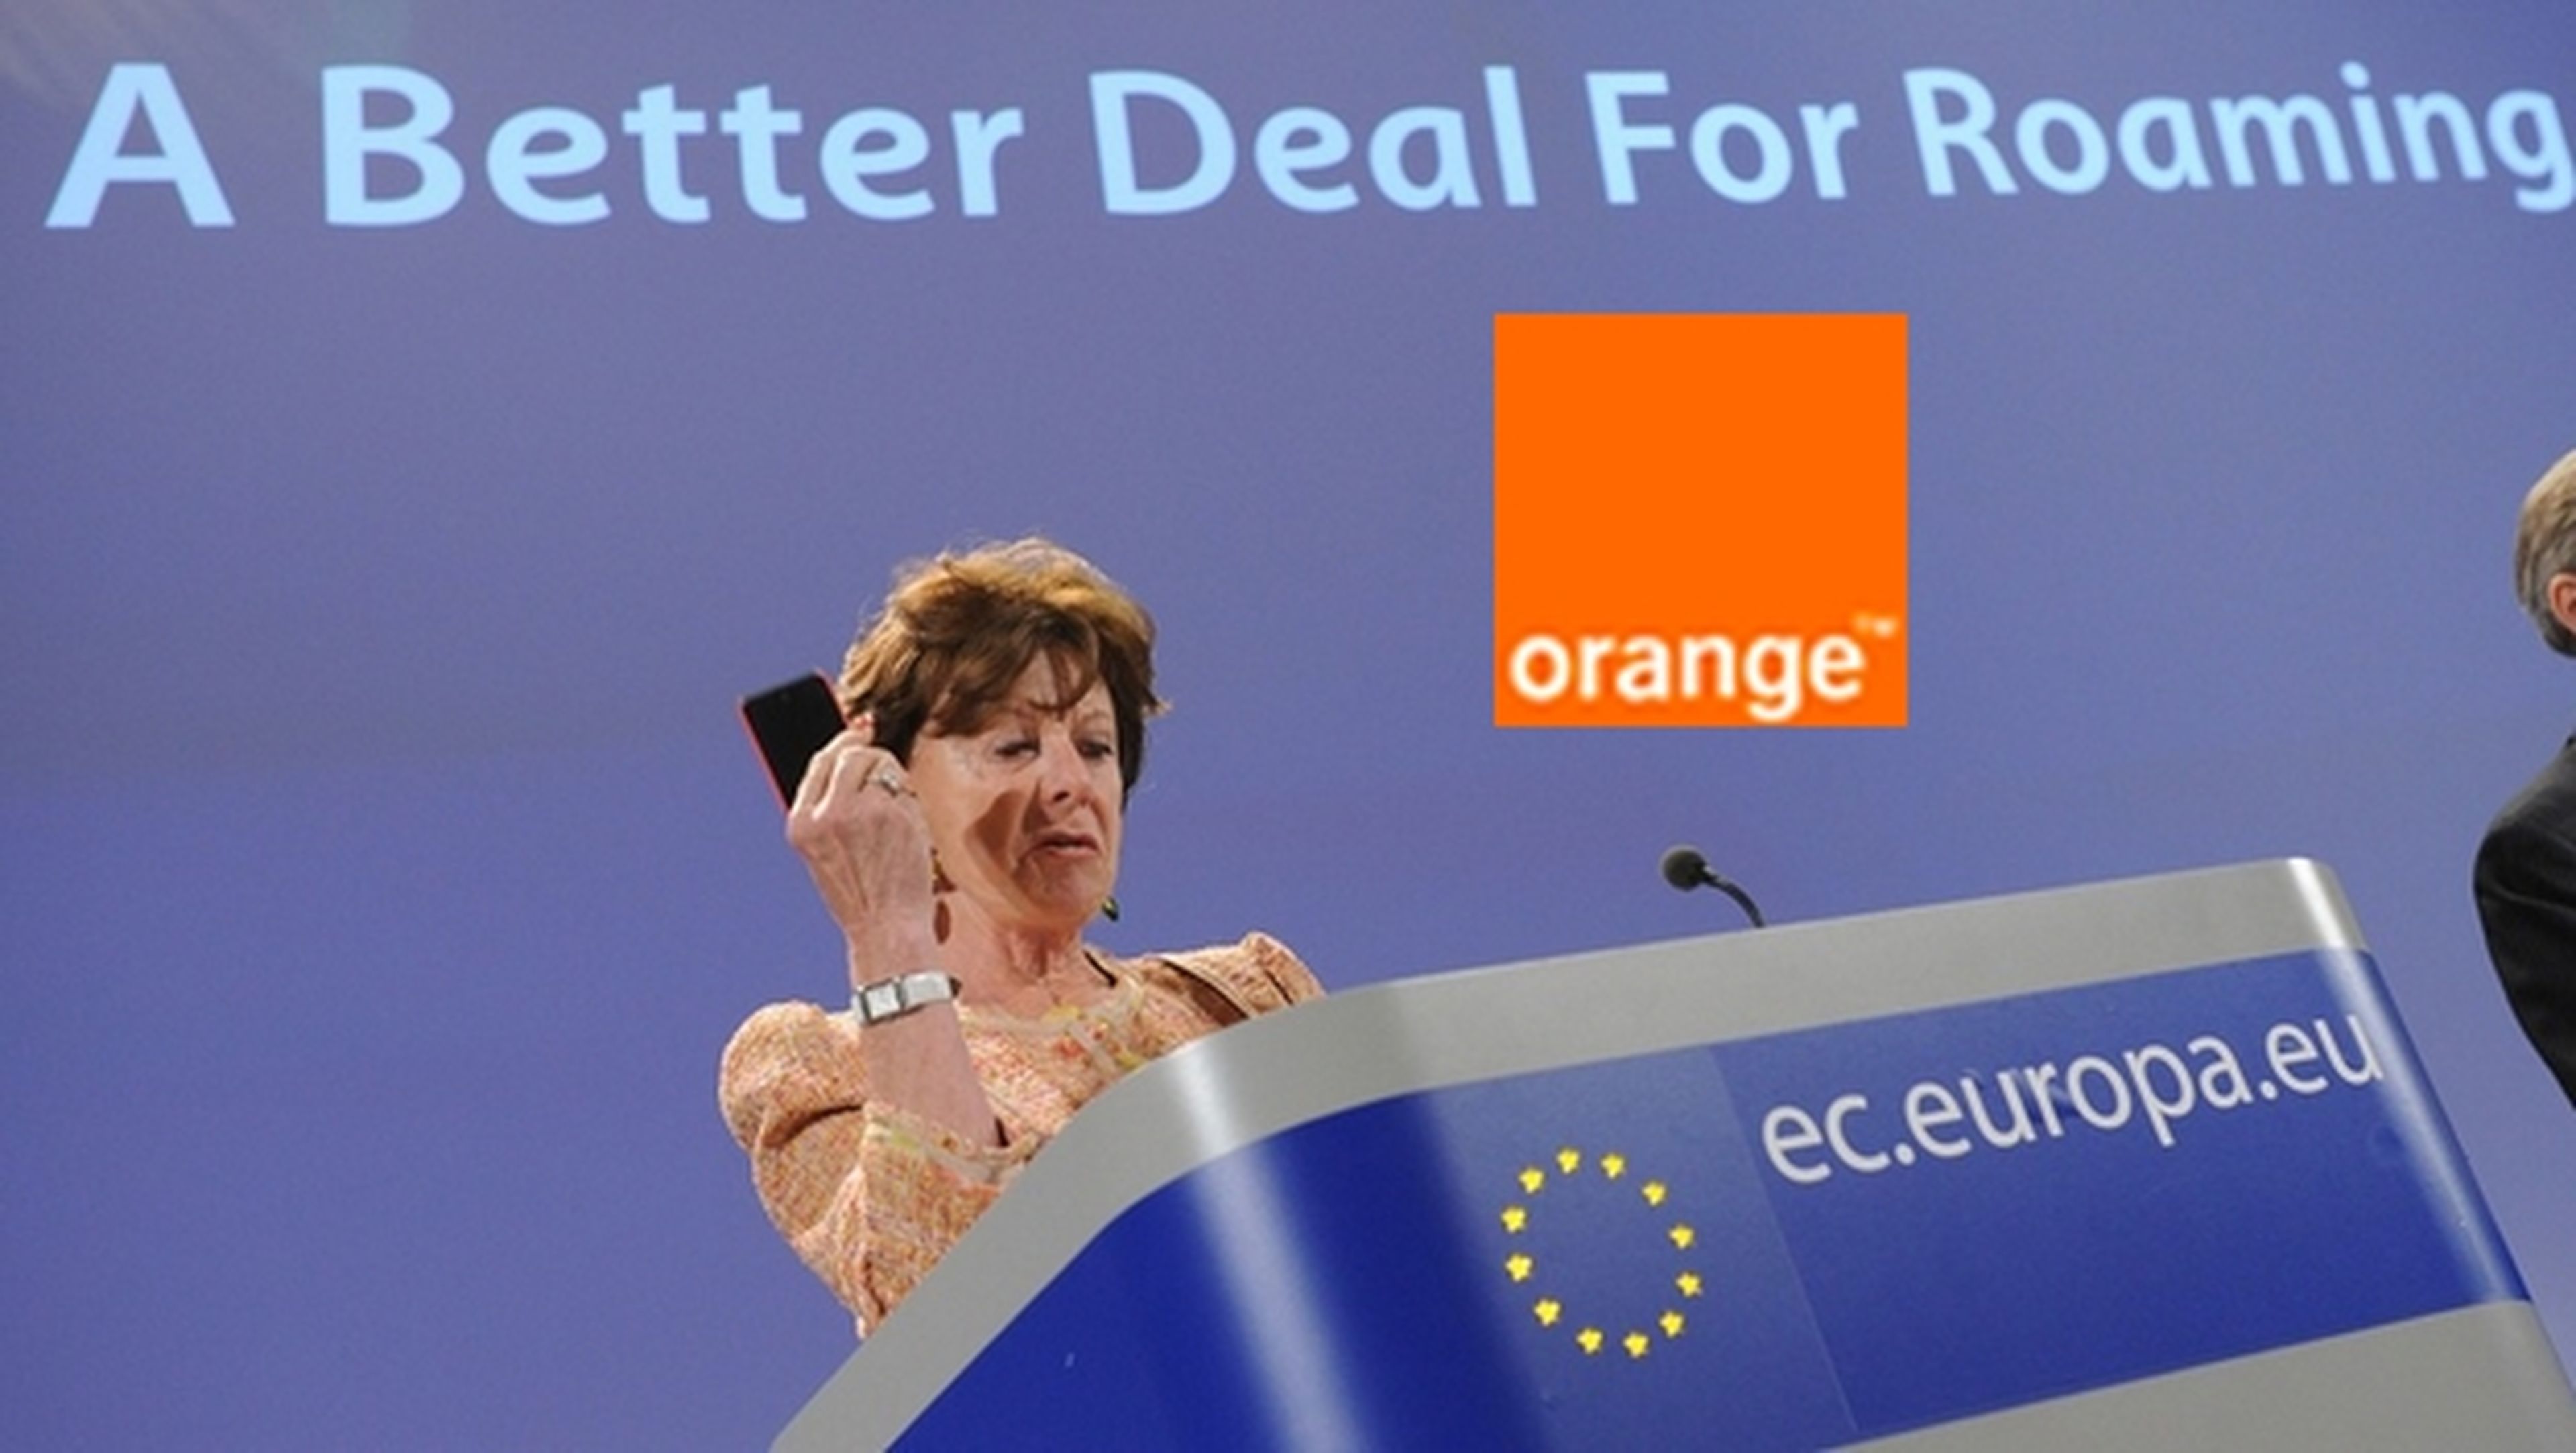 Orange elimina el roaming hoy mismo con su tarifa Go Europe